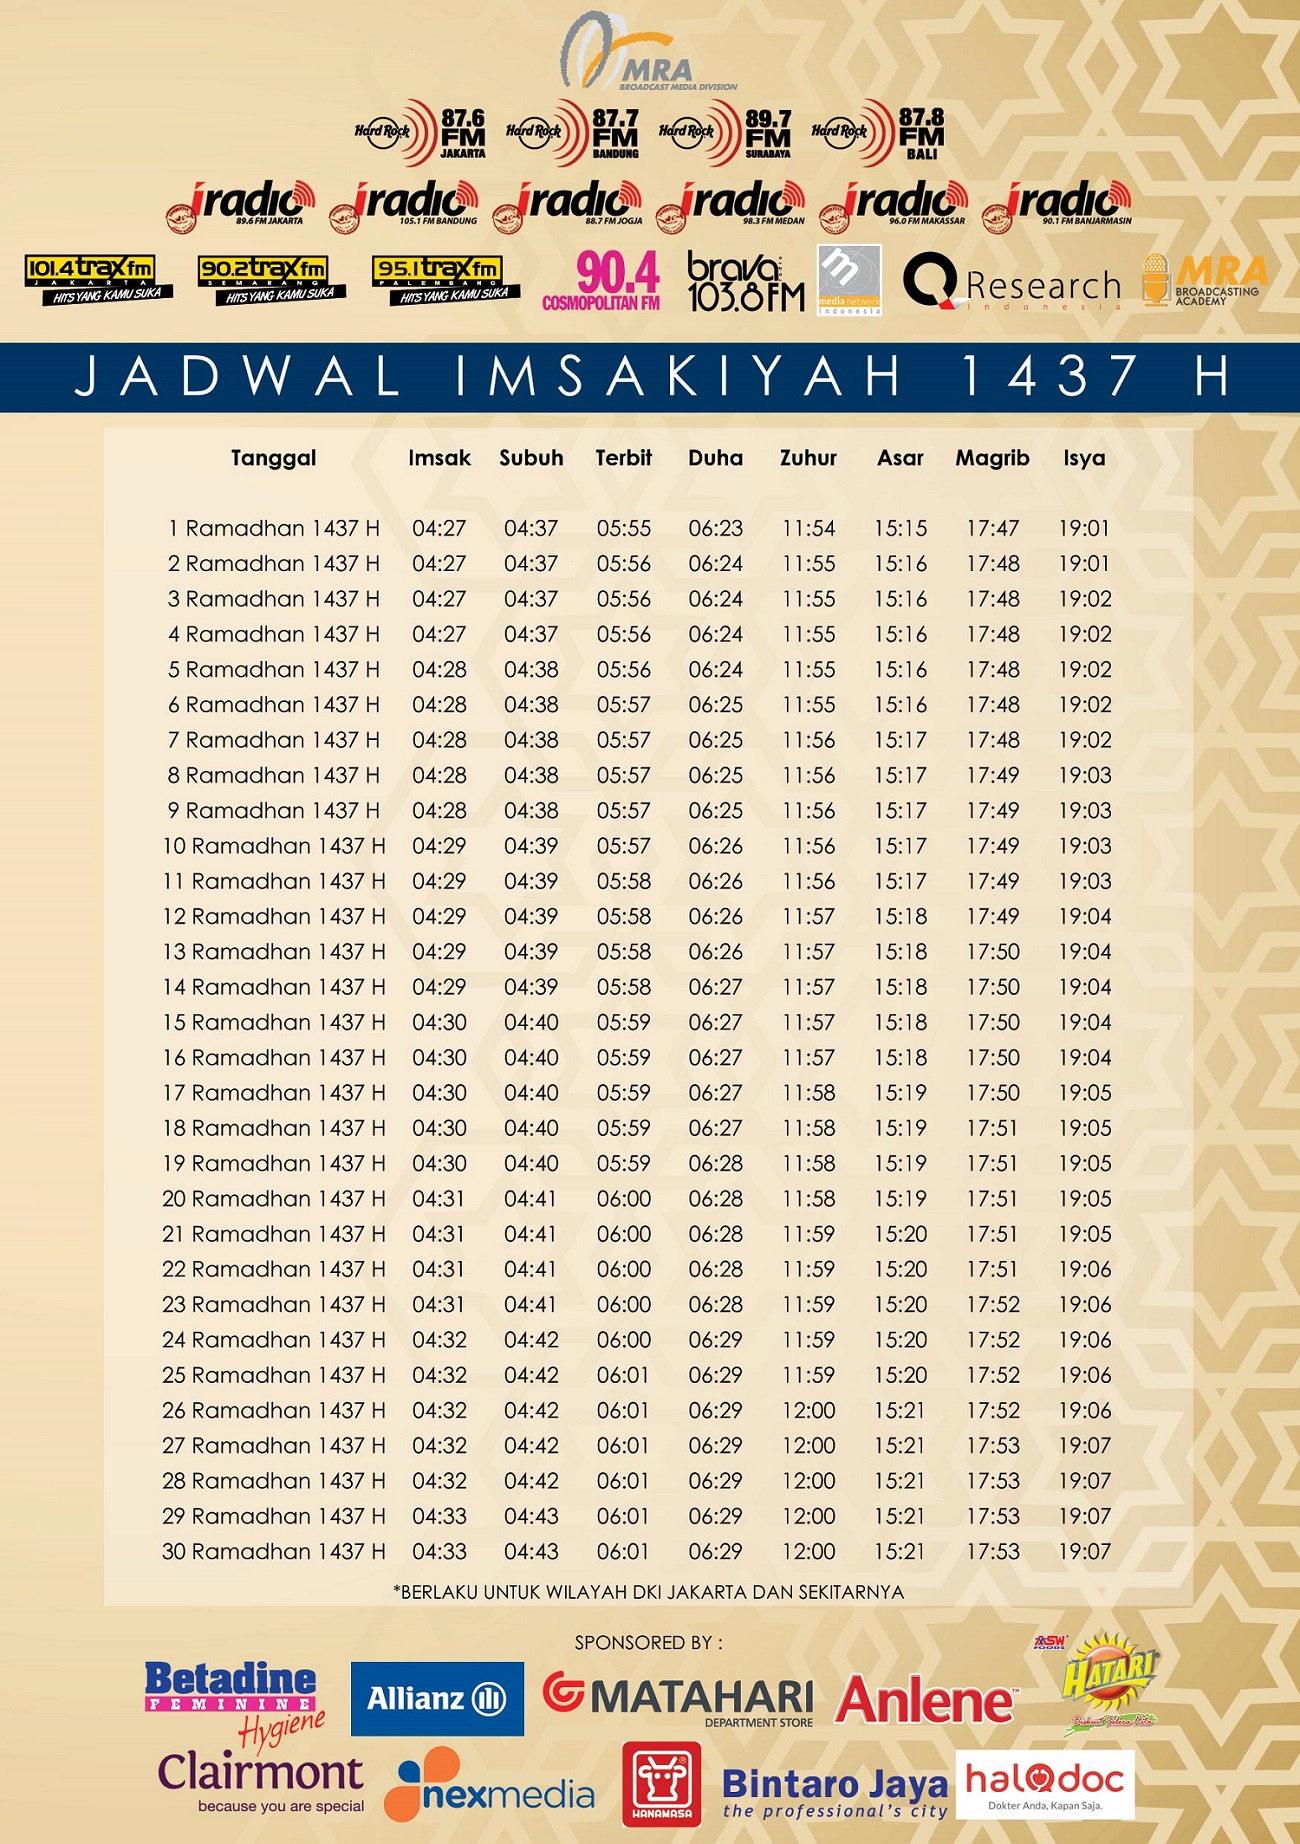 Jadwal Imsakiyah 2016